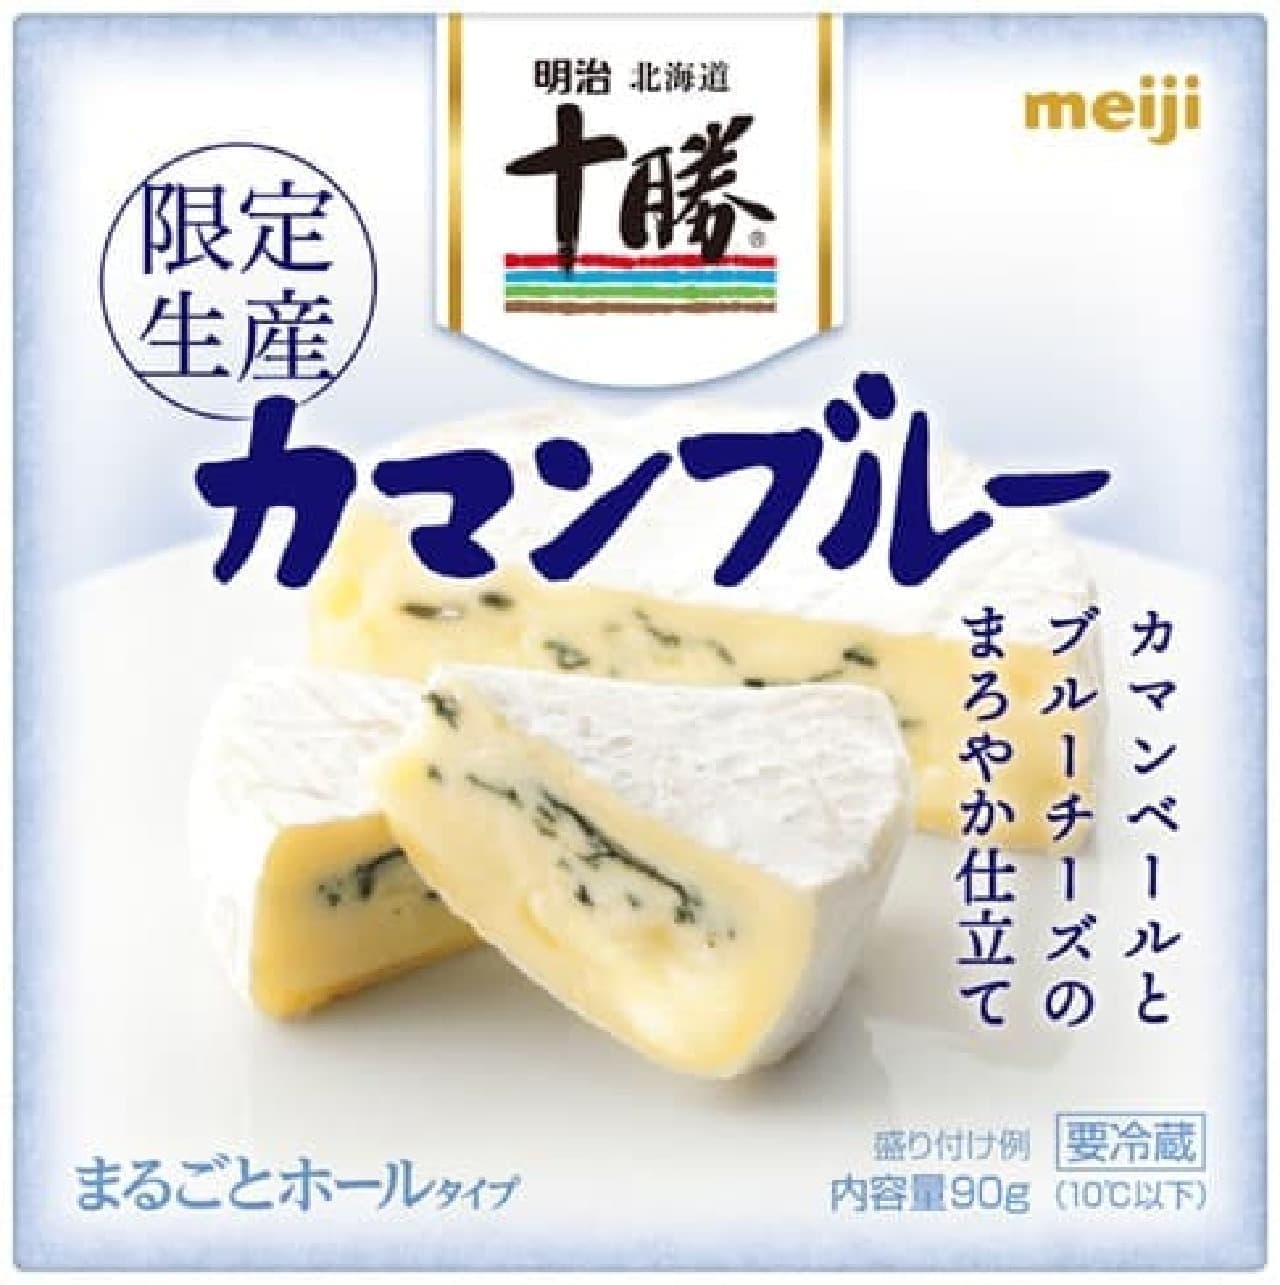 Meiji "Meiji Hokkaido Tokachi Kaman Blue" po